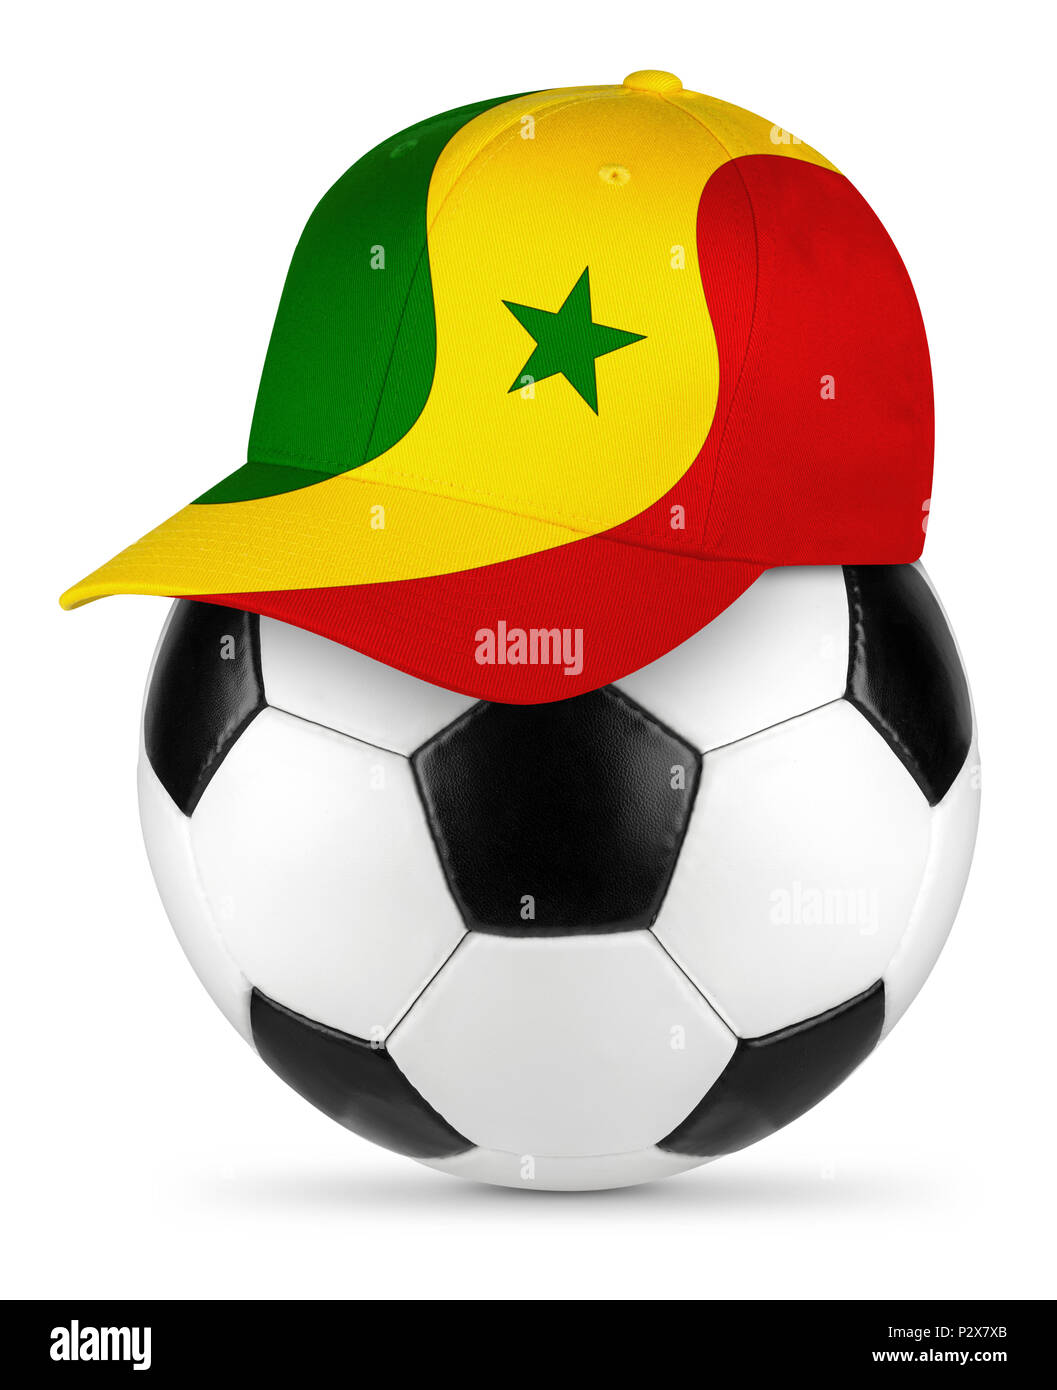 Classic Noir blanc ballon de football en cuir pavillon sénégalais Sénégal amateur de baseball cap fond isolé concept sport football Banque D'Images